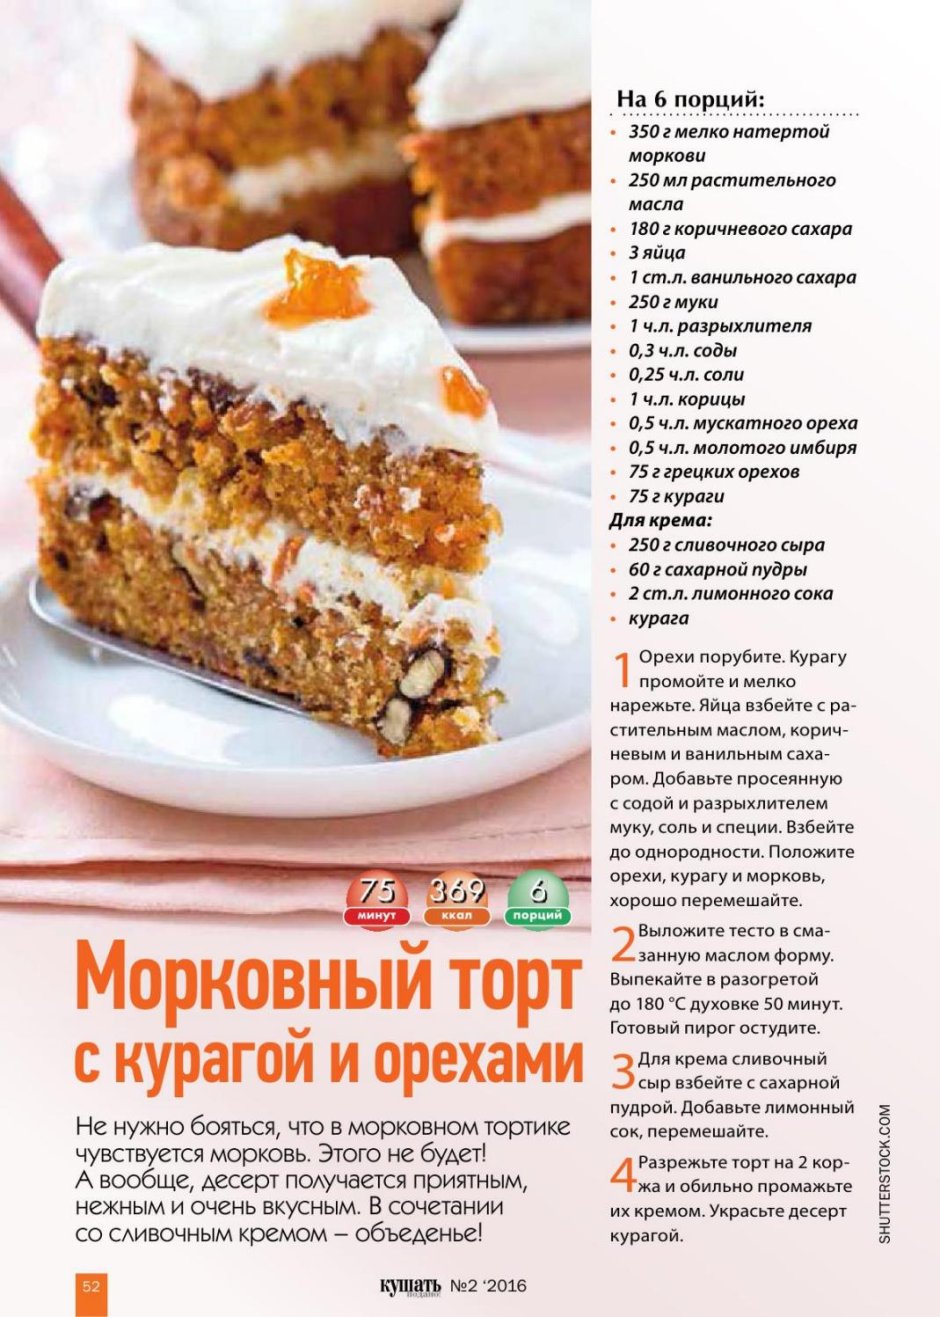 Тортики с рецептами из журналов